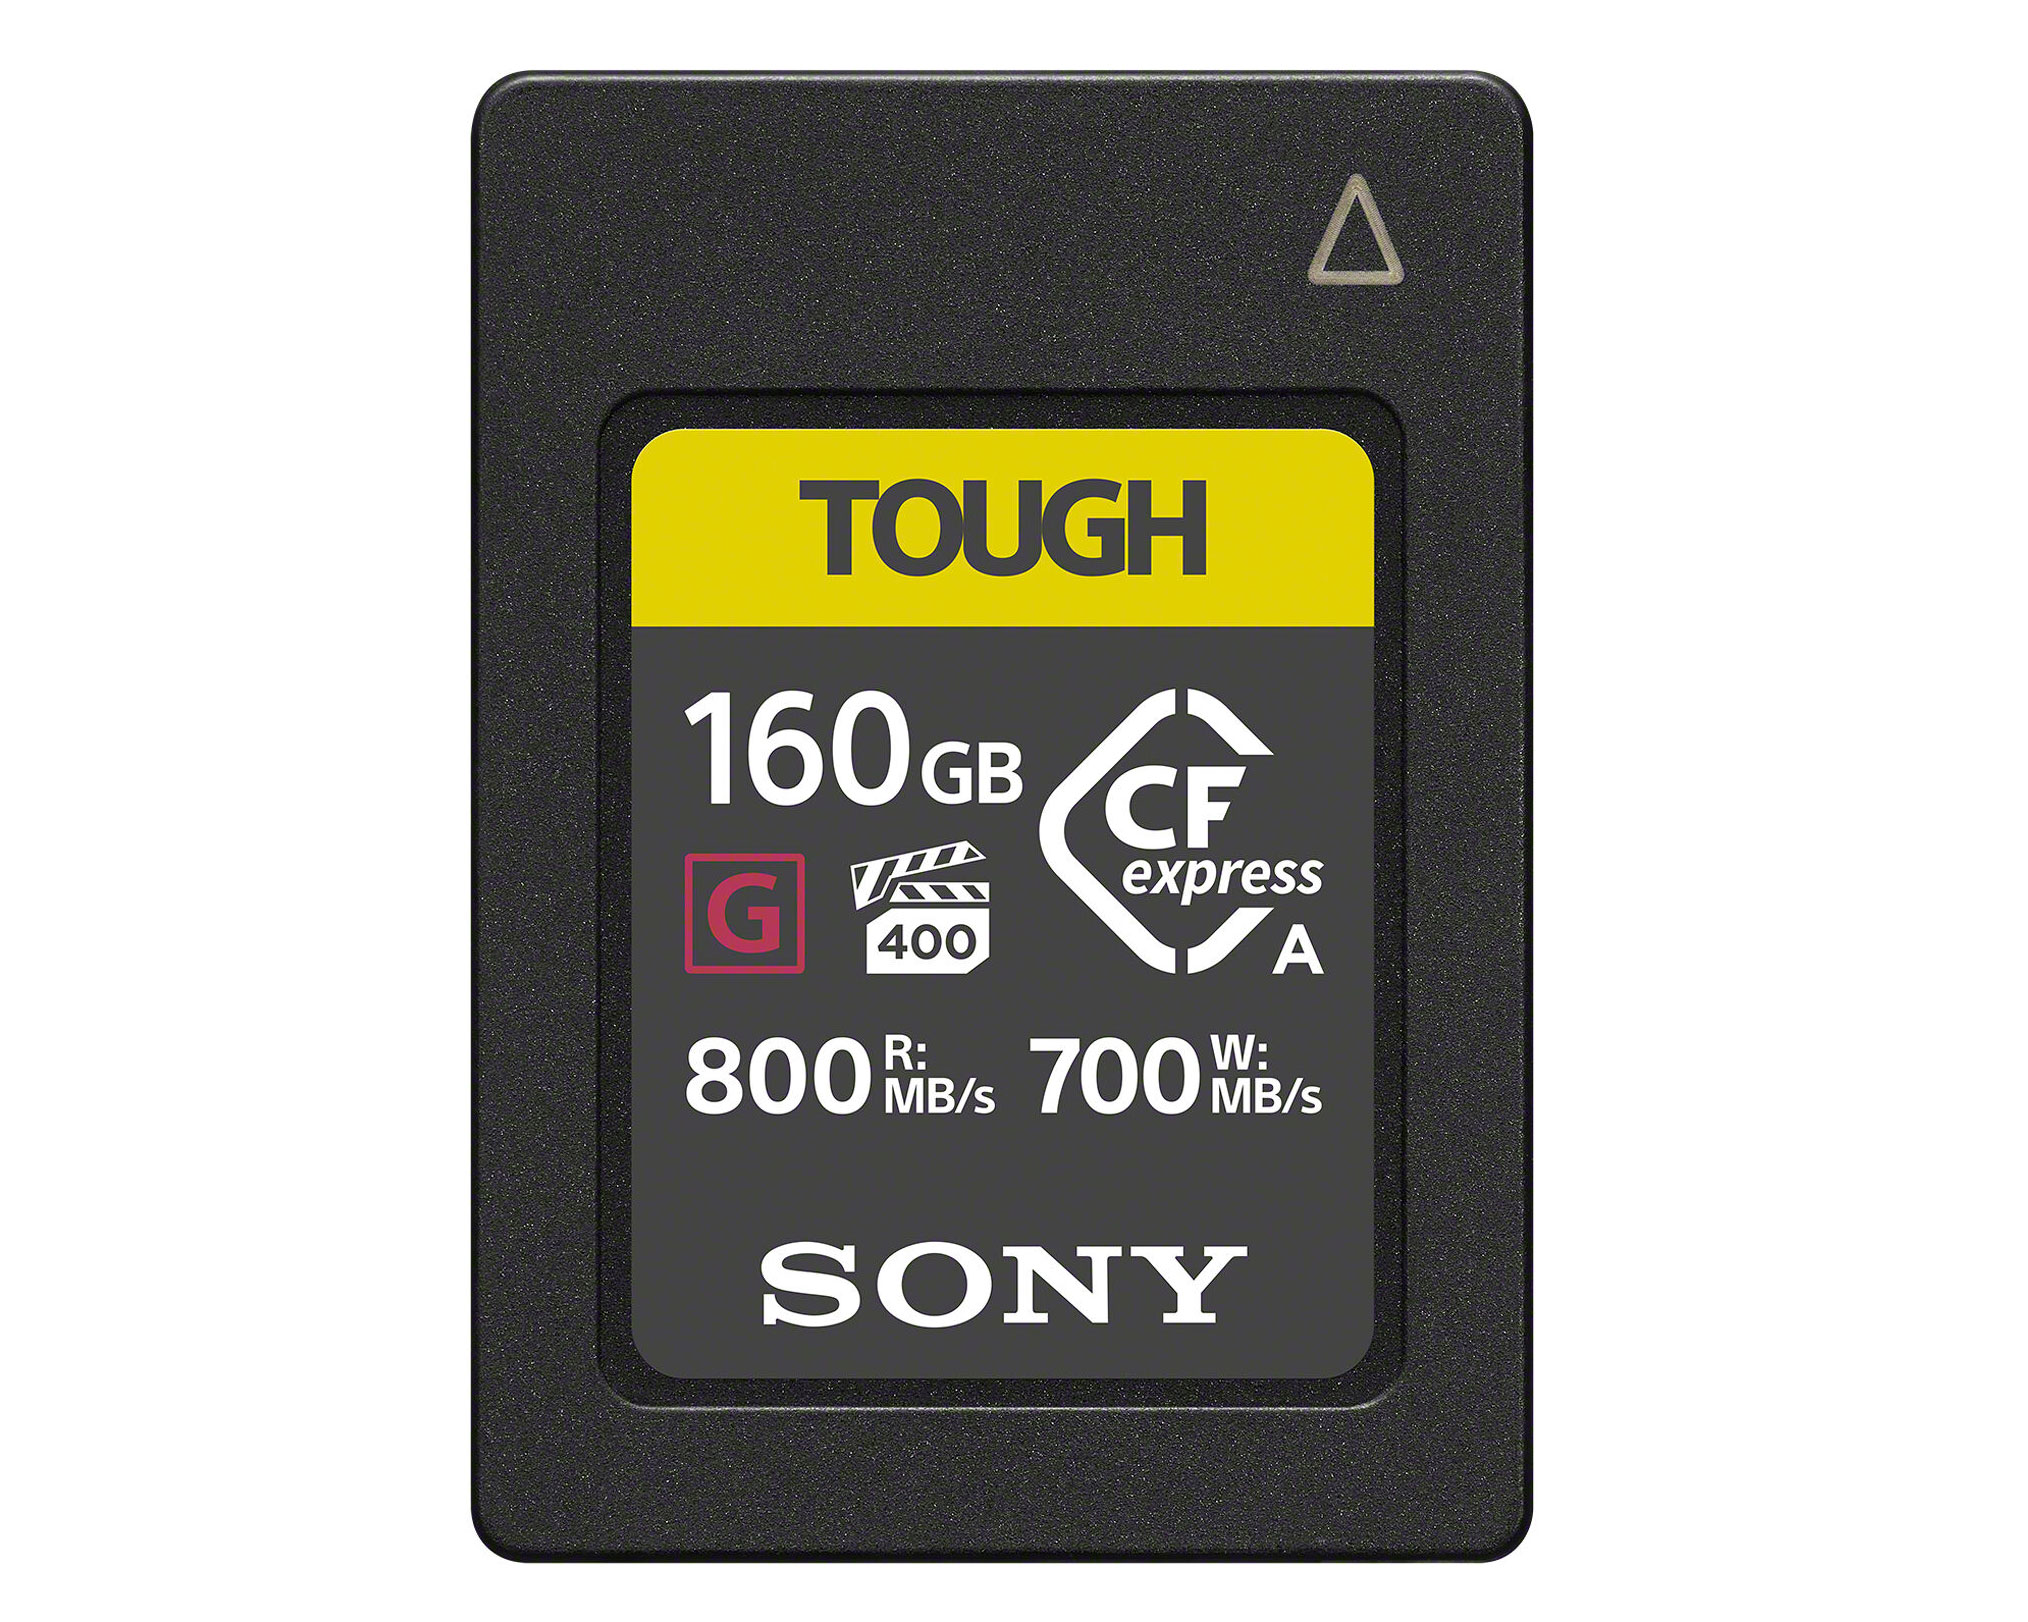 Sony CFexpress Type A Tough G 160GB